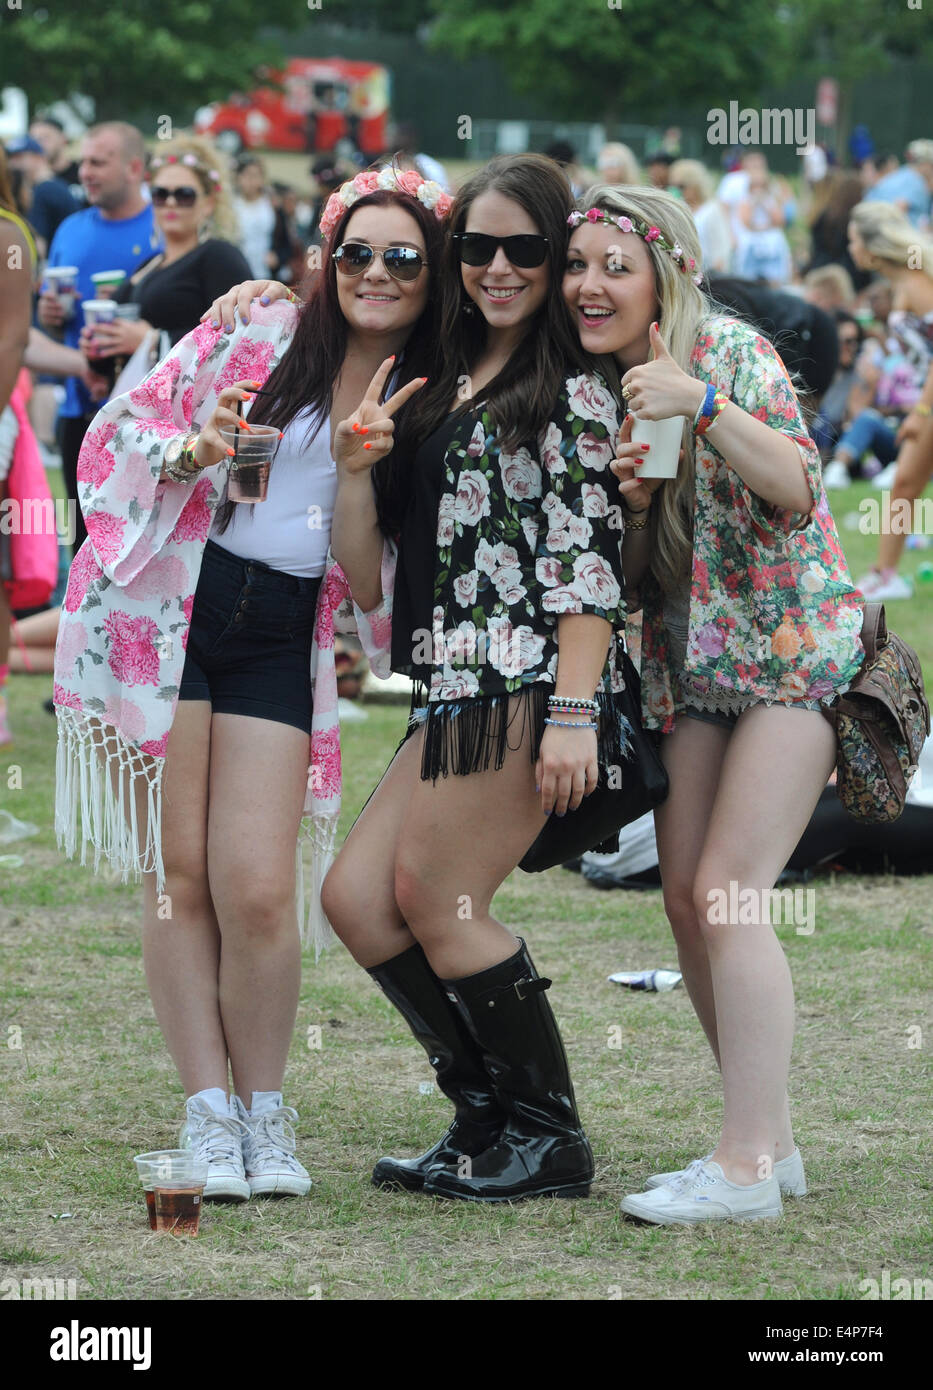 Los jóvenes divirtiéndose en un festival de música al aire libre RE VERANO festivales de rock cantantes adolescentes EVENTOS SOCIALES UK Foto de stock